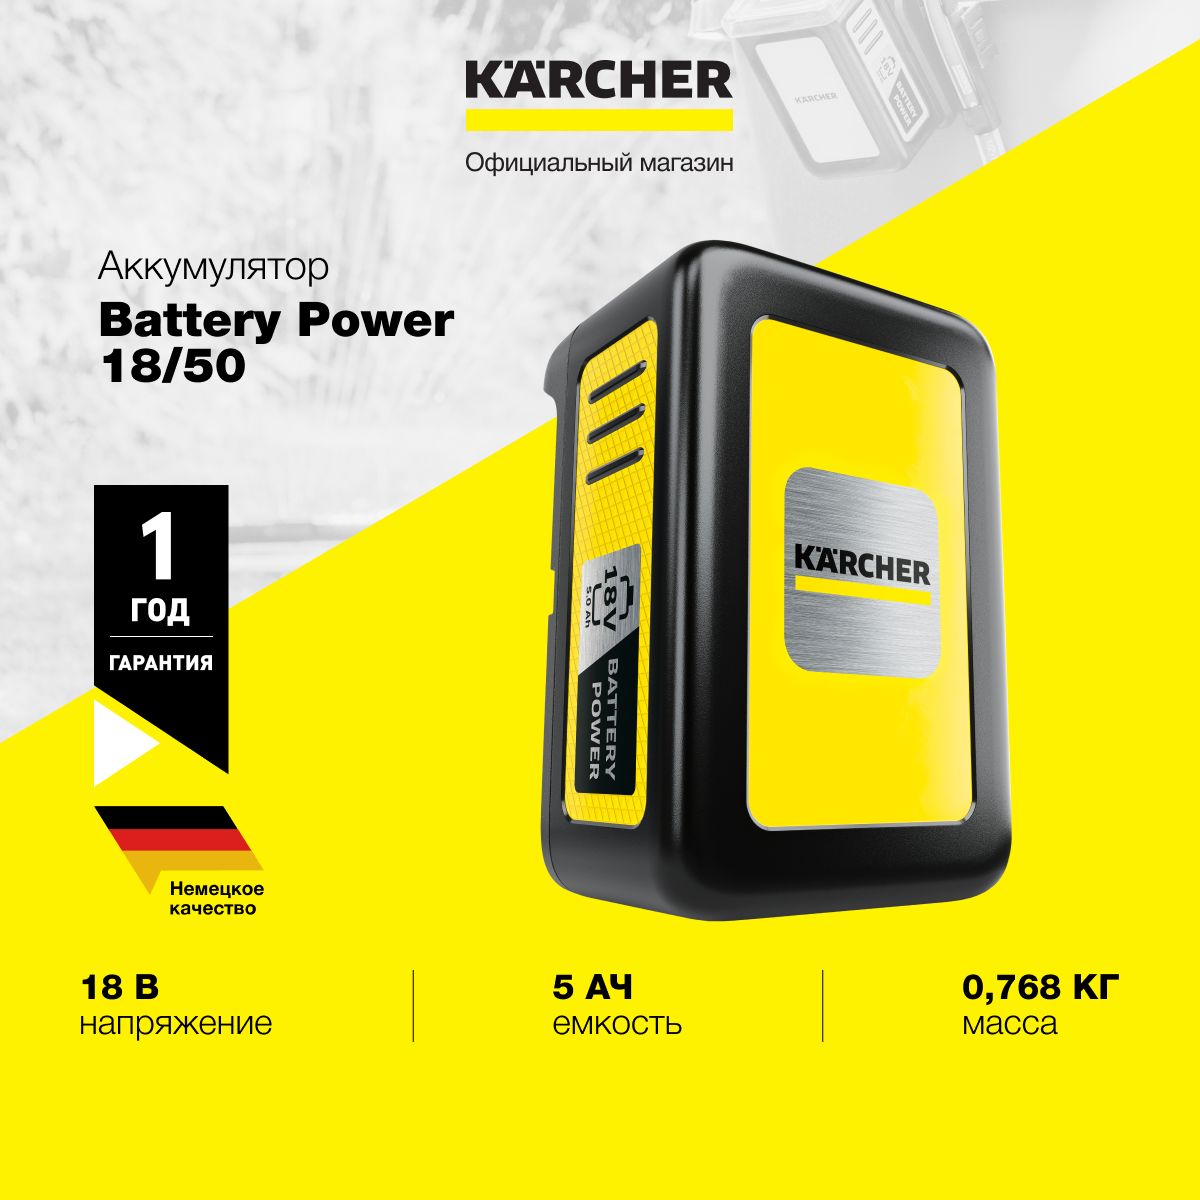 Karcher battery